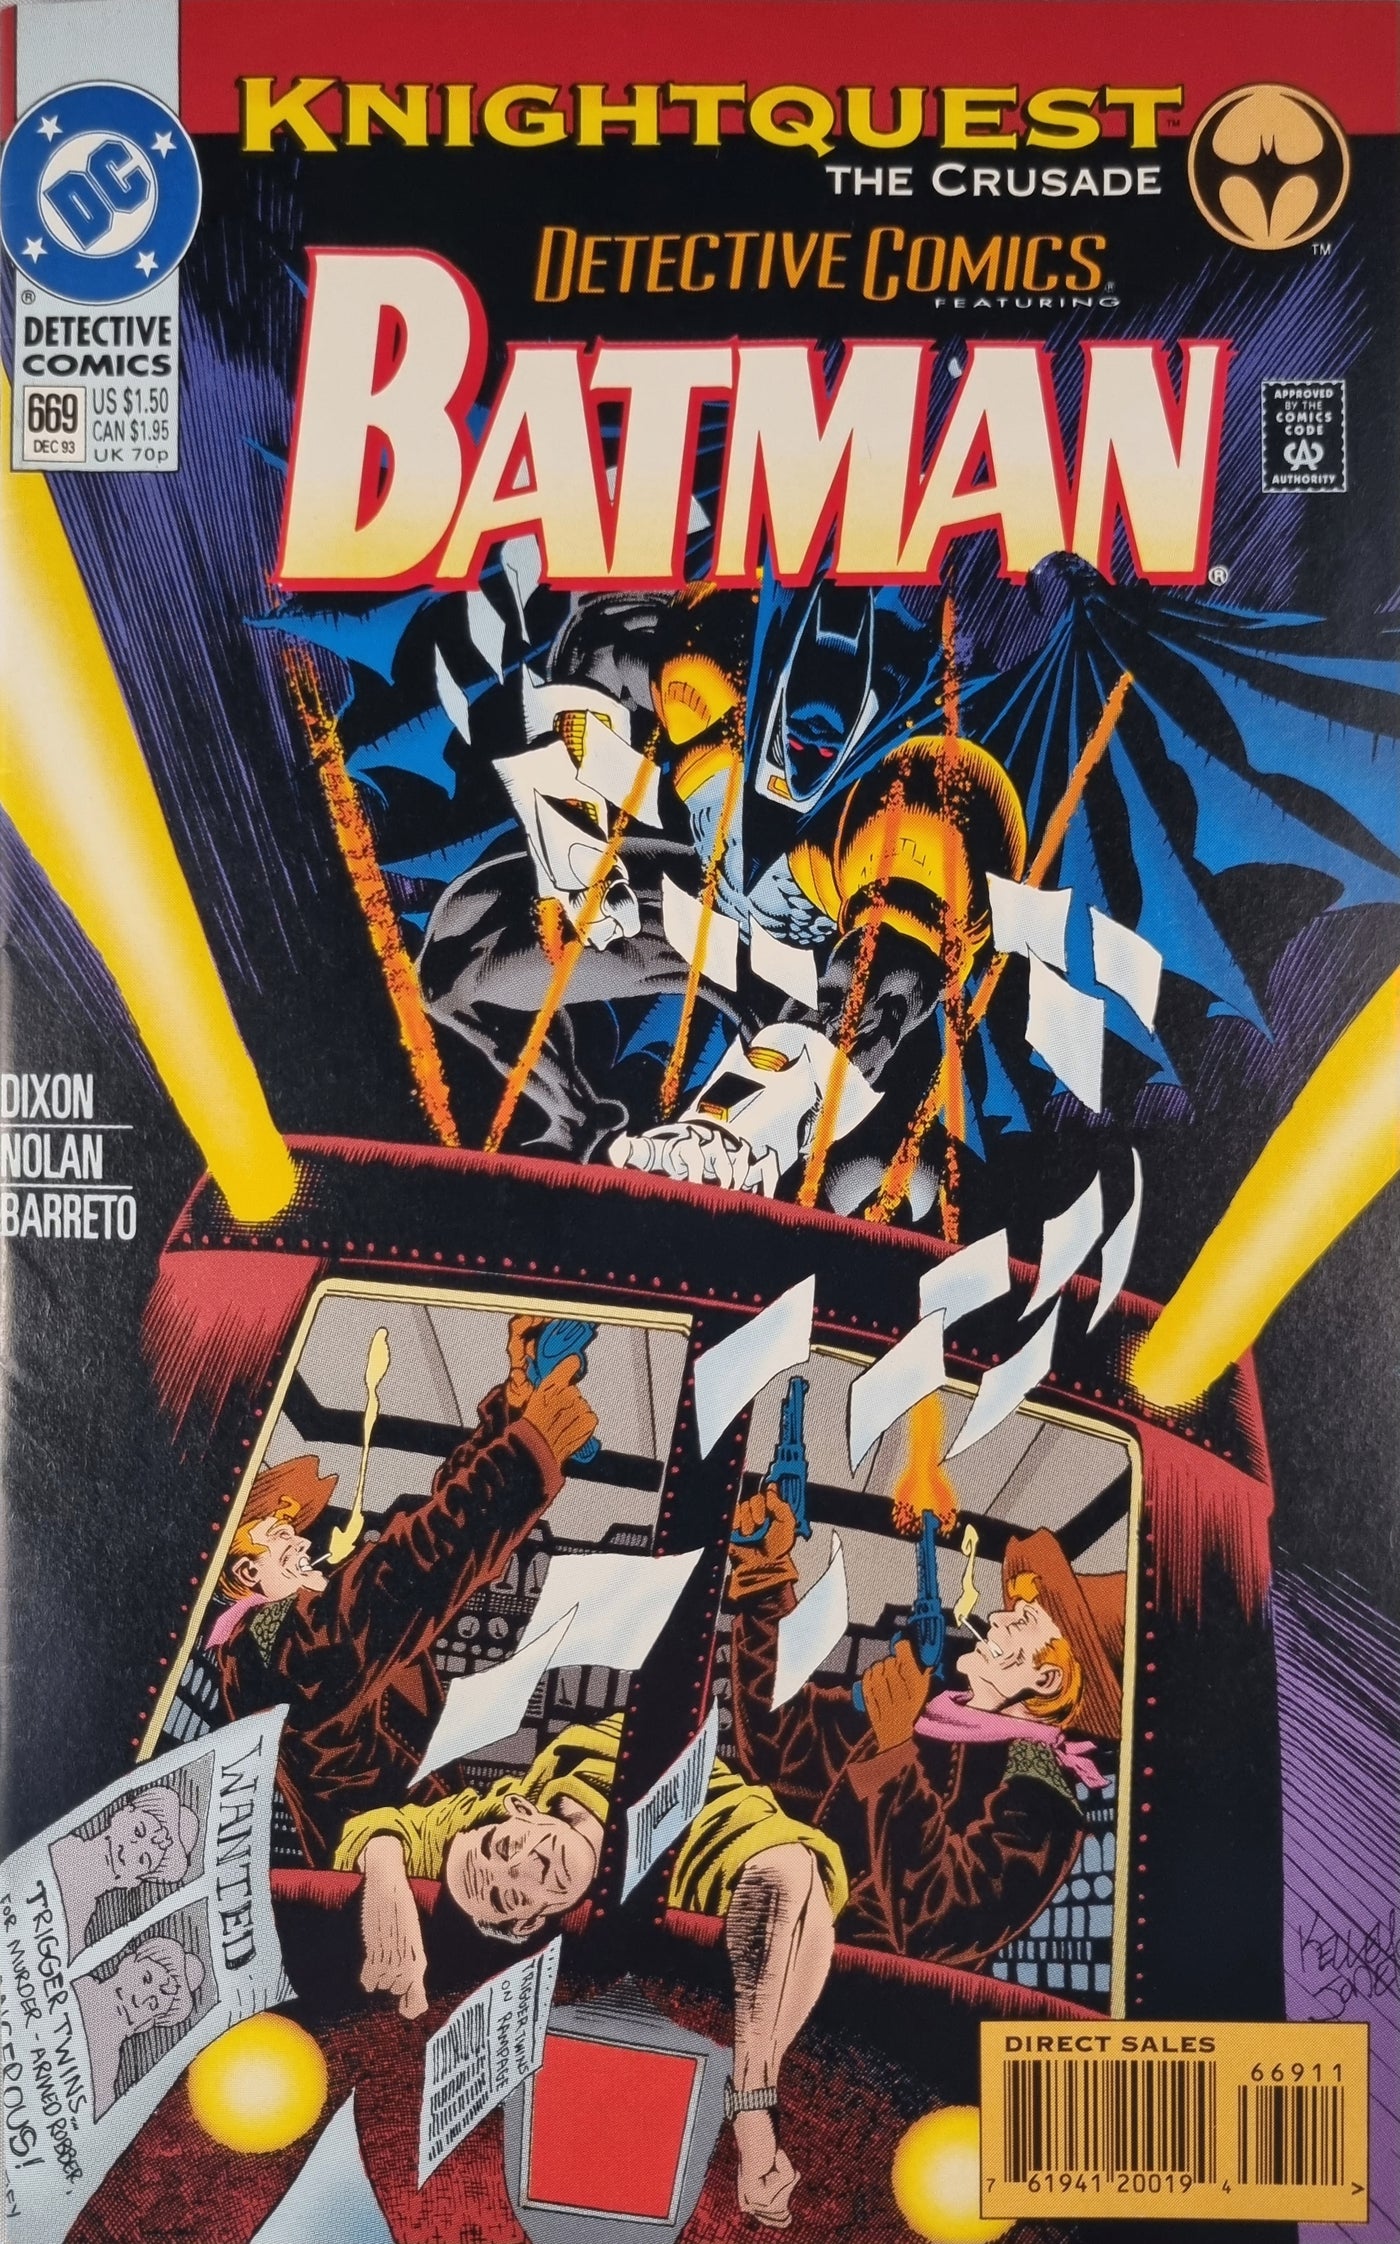 Detective Comics (Volume 1) #669